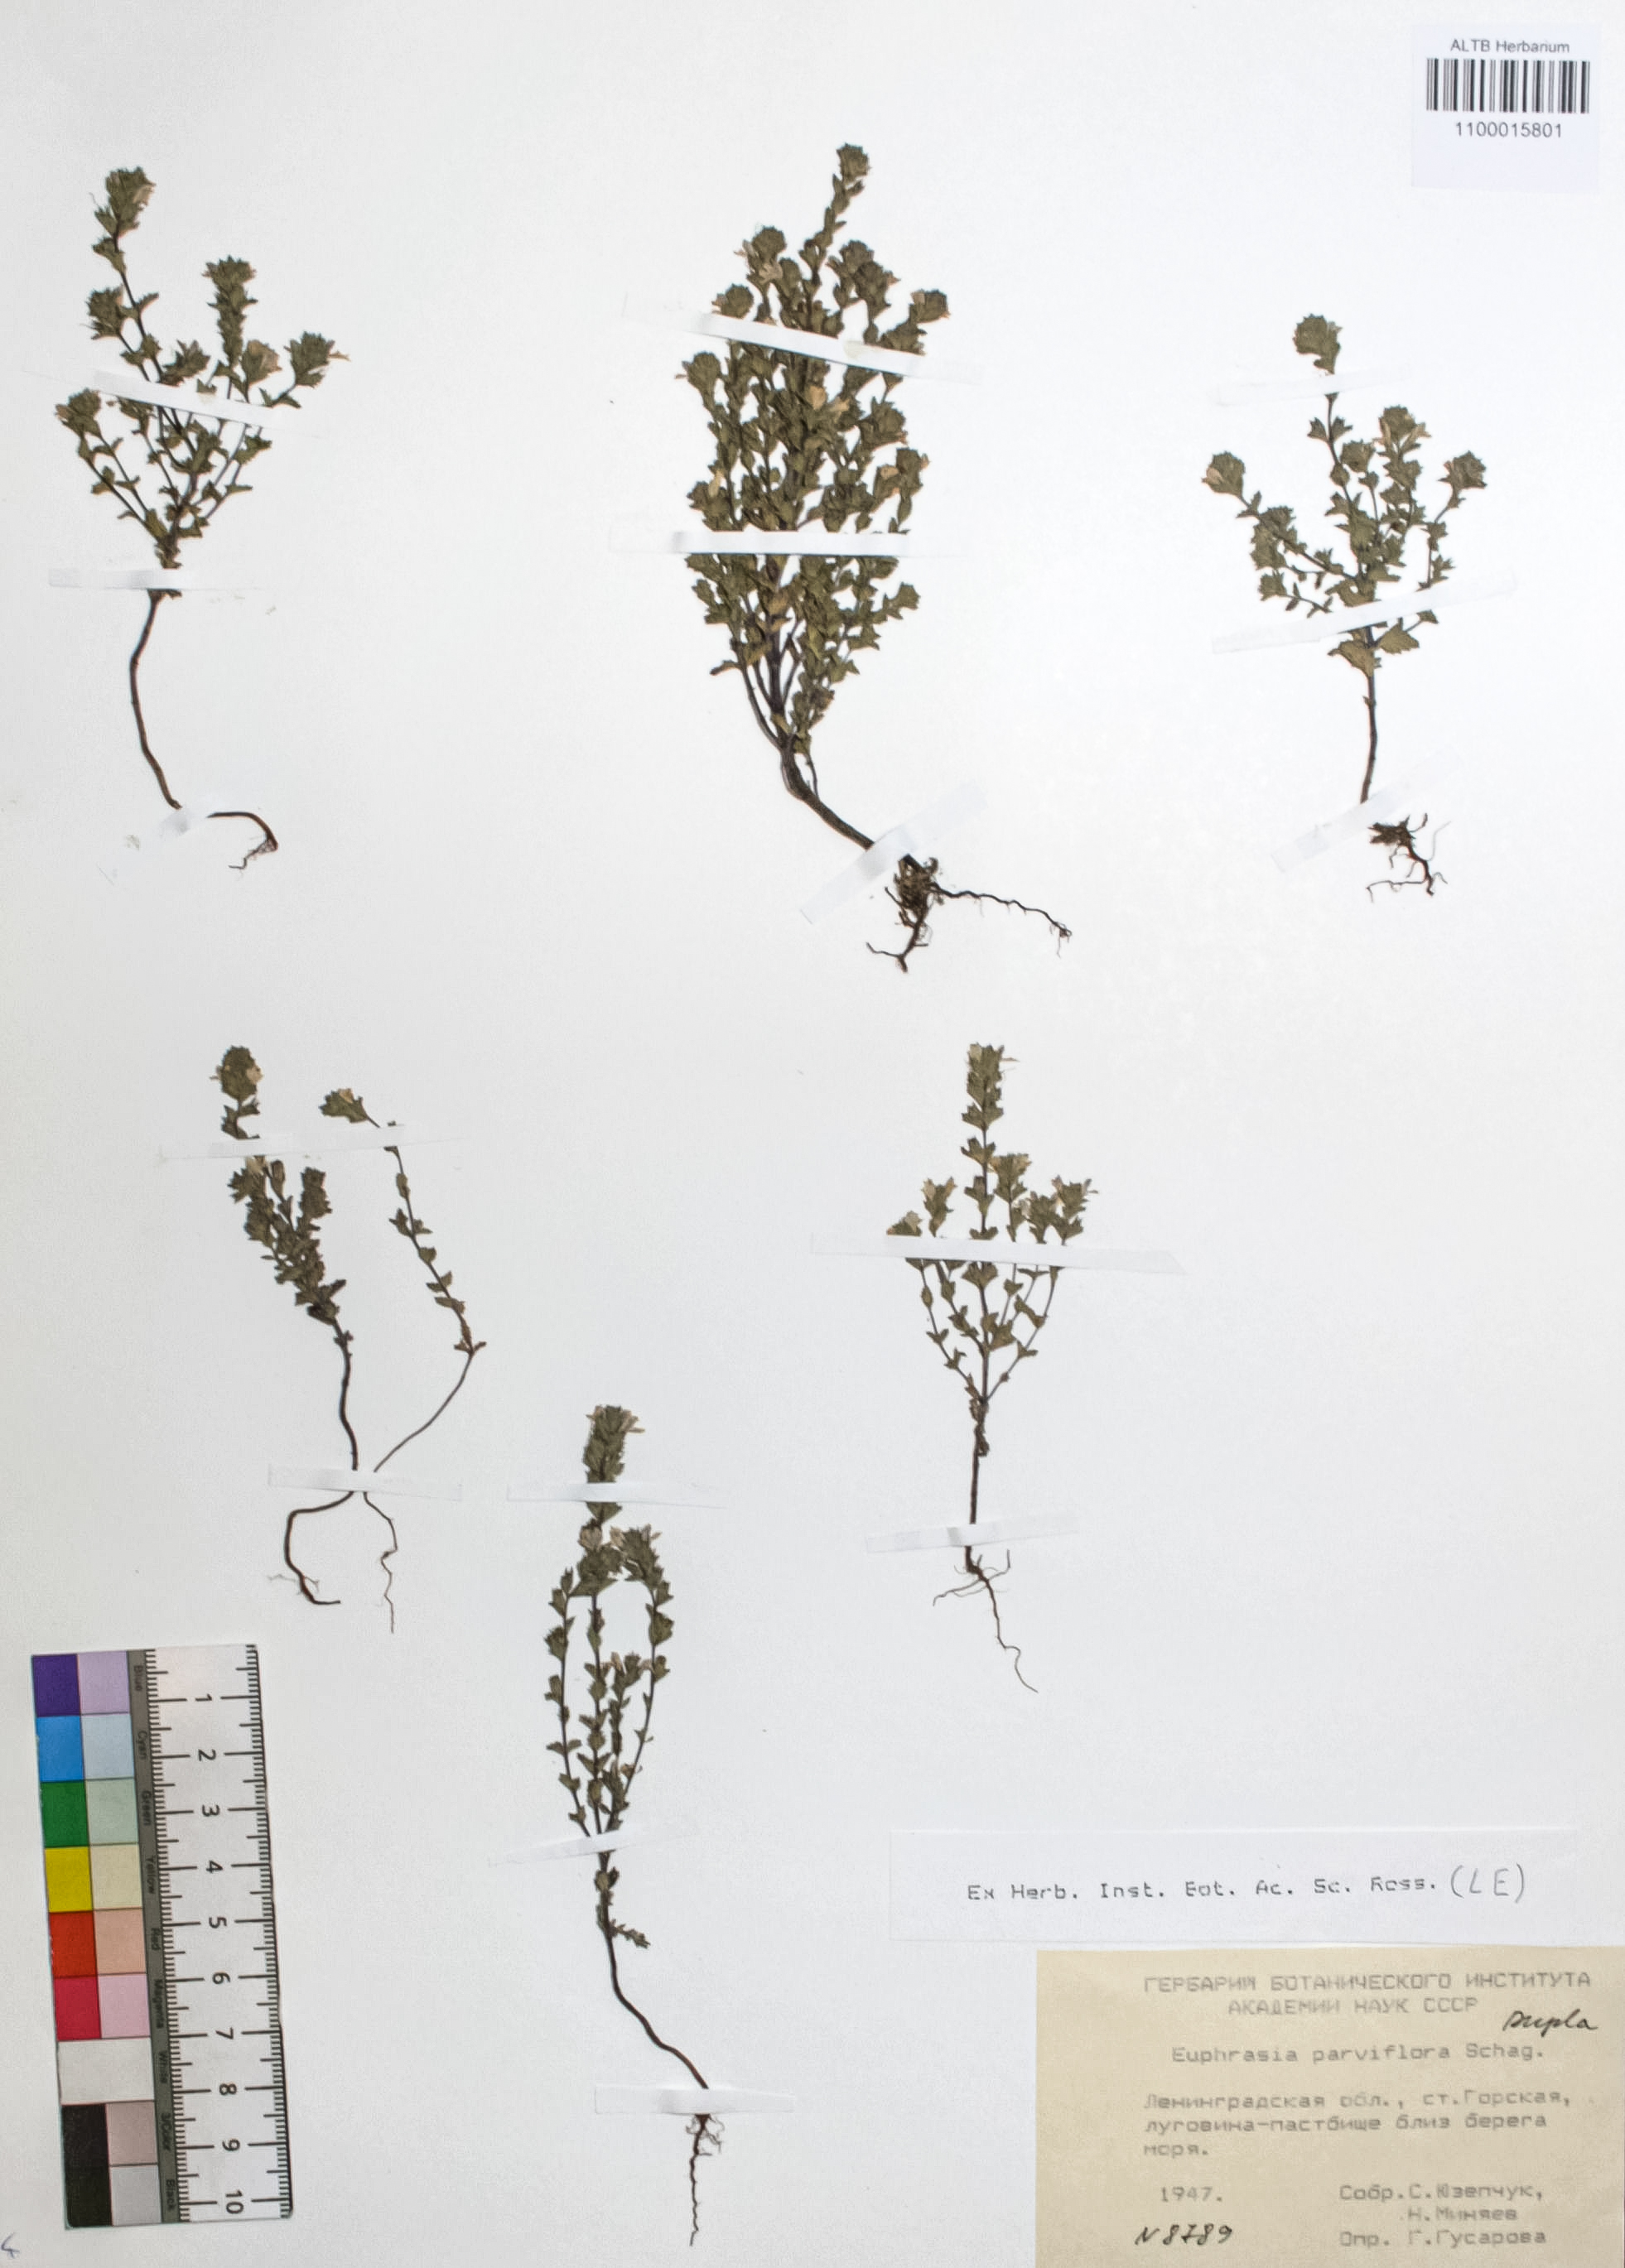 Euphrasia parviflora Schag.